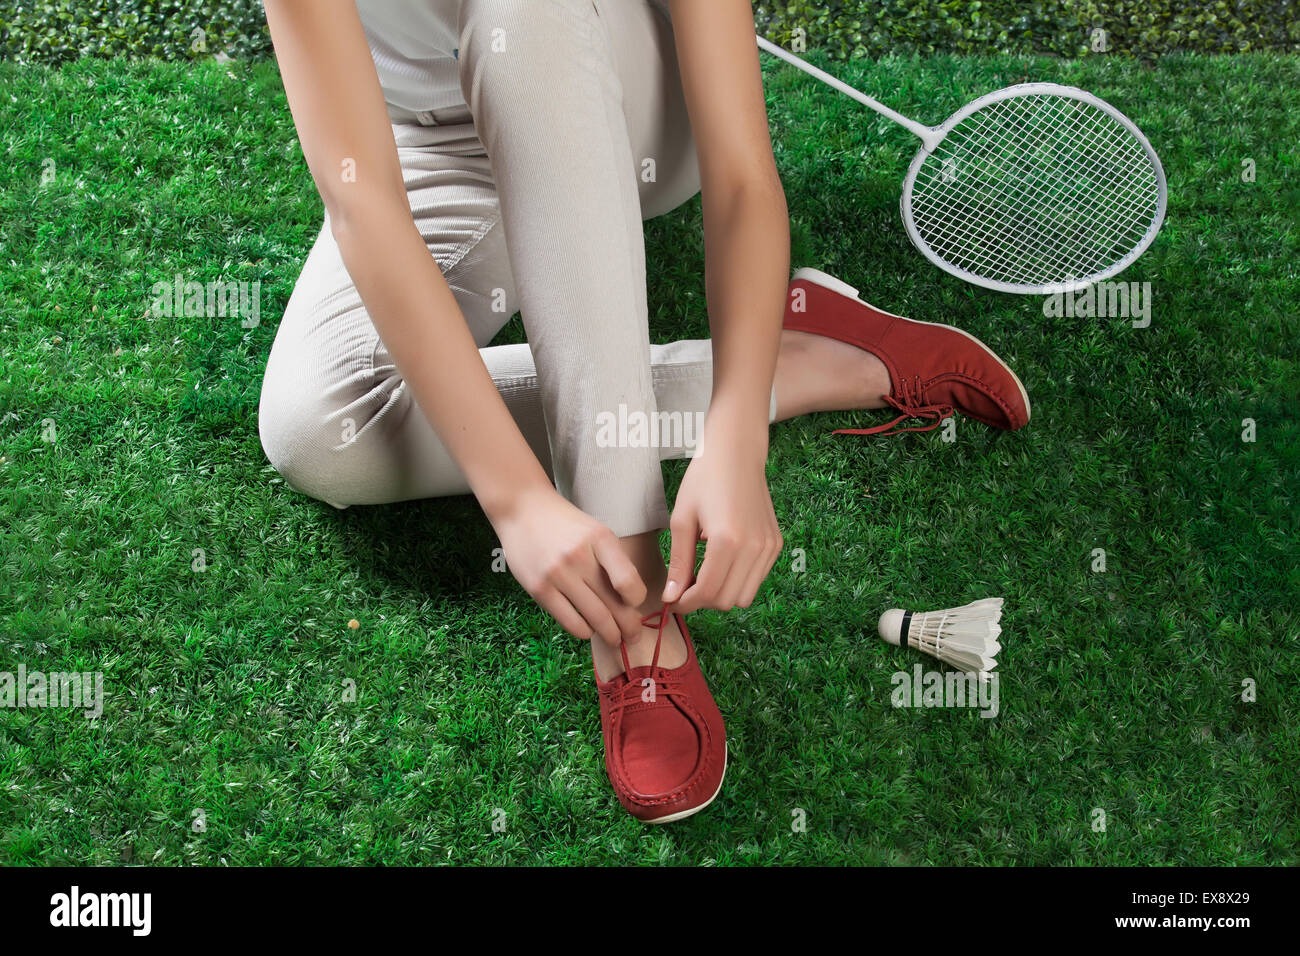 Frau Frauen weibliche Weiblichkeit Badminton Bein Schläger Federball Grasgrün Sport Natur Körper Teil schließen sich Outdoor-Schuhe Stockfoto